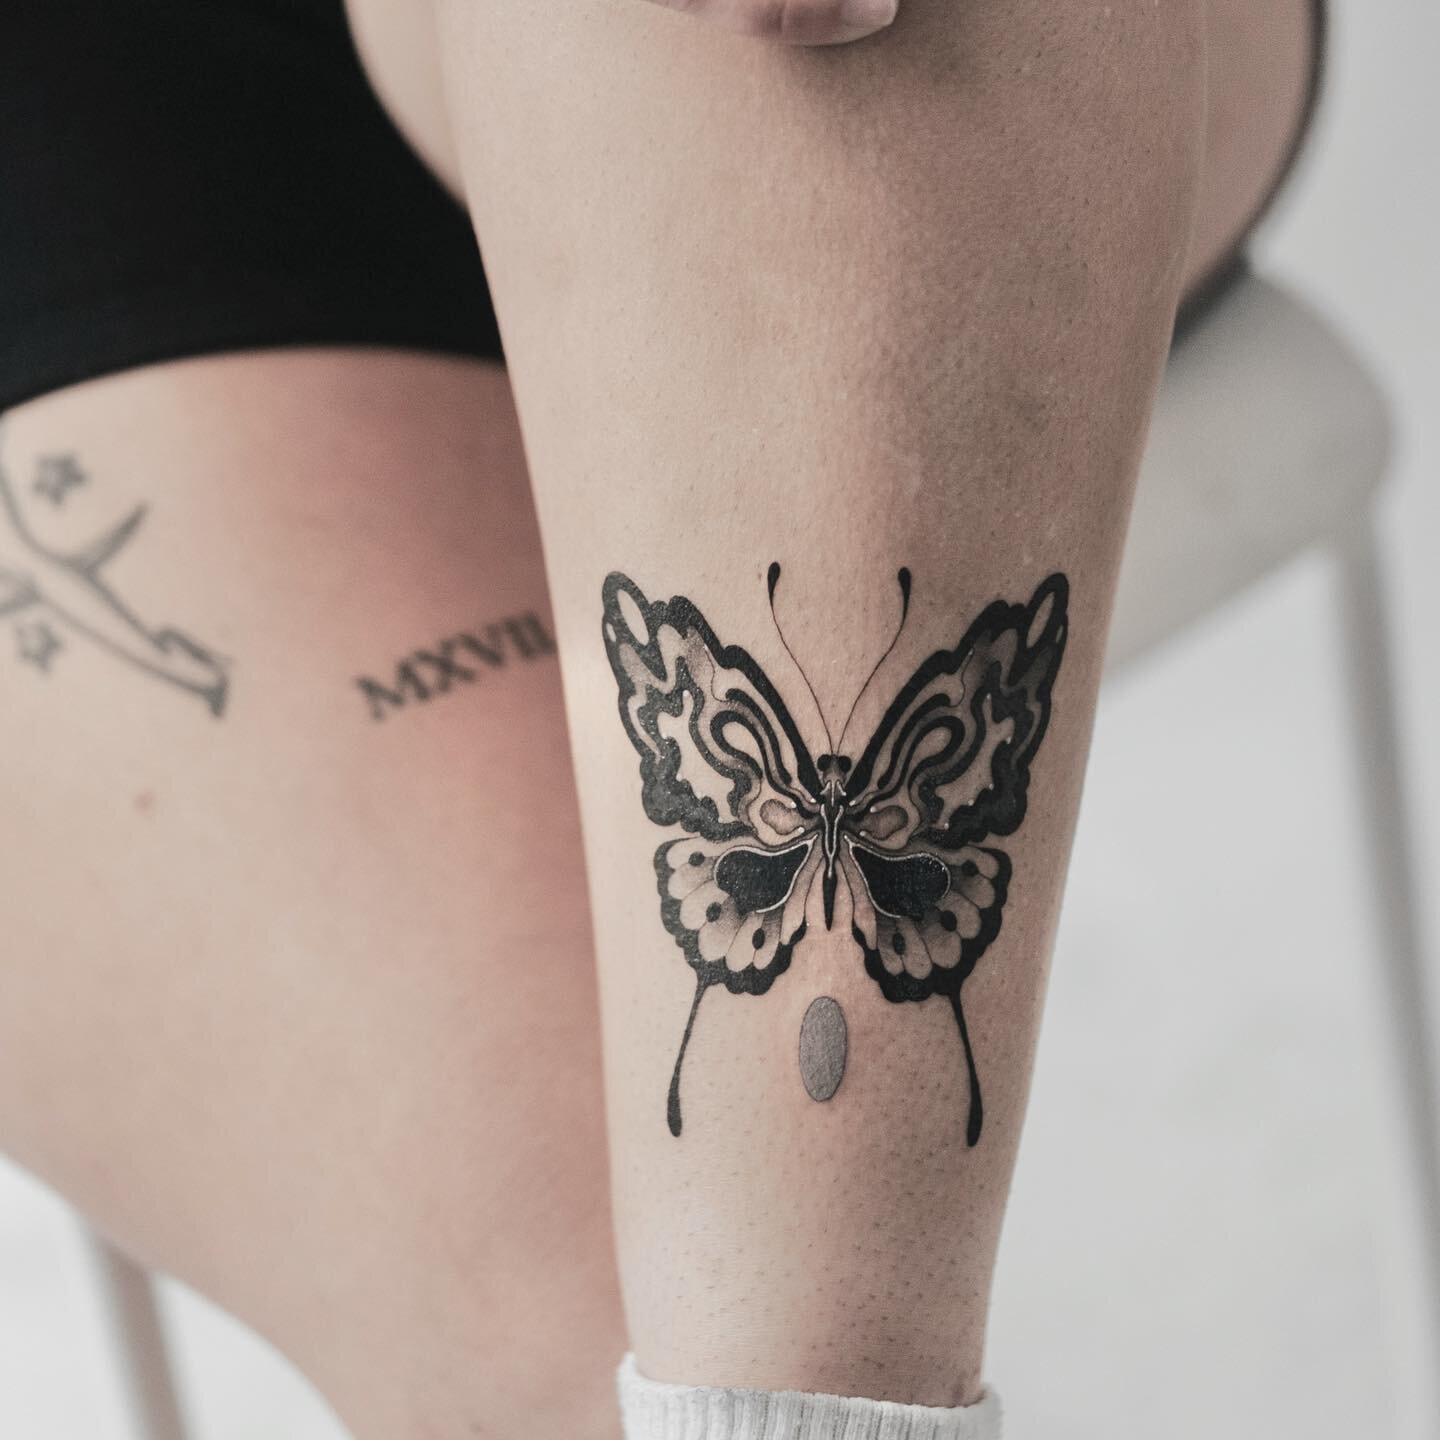 Custom for Jacklyn🦋🖤🦋
.
.
.
.
#tattoo #torontotattoo #tattooart #legtattoo #butterflytattoo #blackandgreytattoo #tattoostyle #ink #blackwork #trippytattoo #funtattoo #customtattoo #tattooist #uniquetattoo